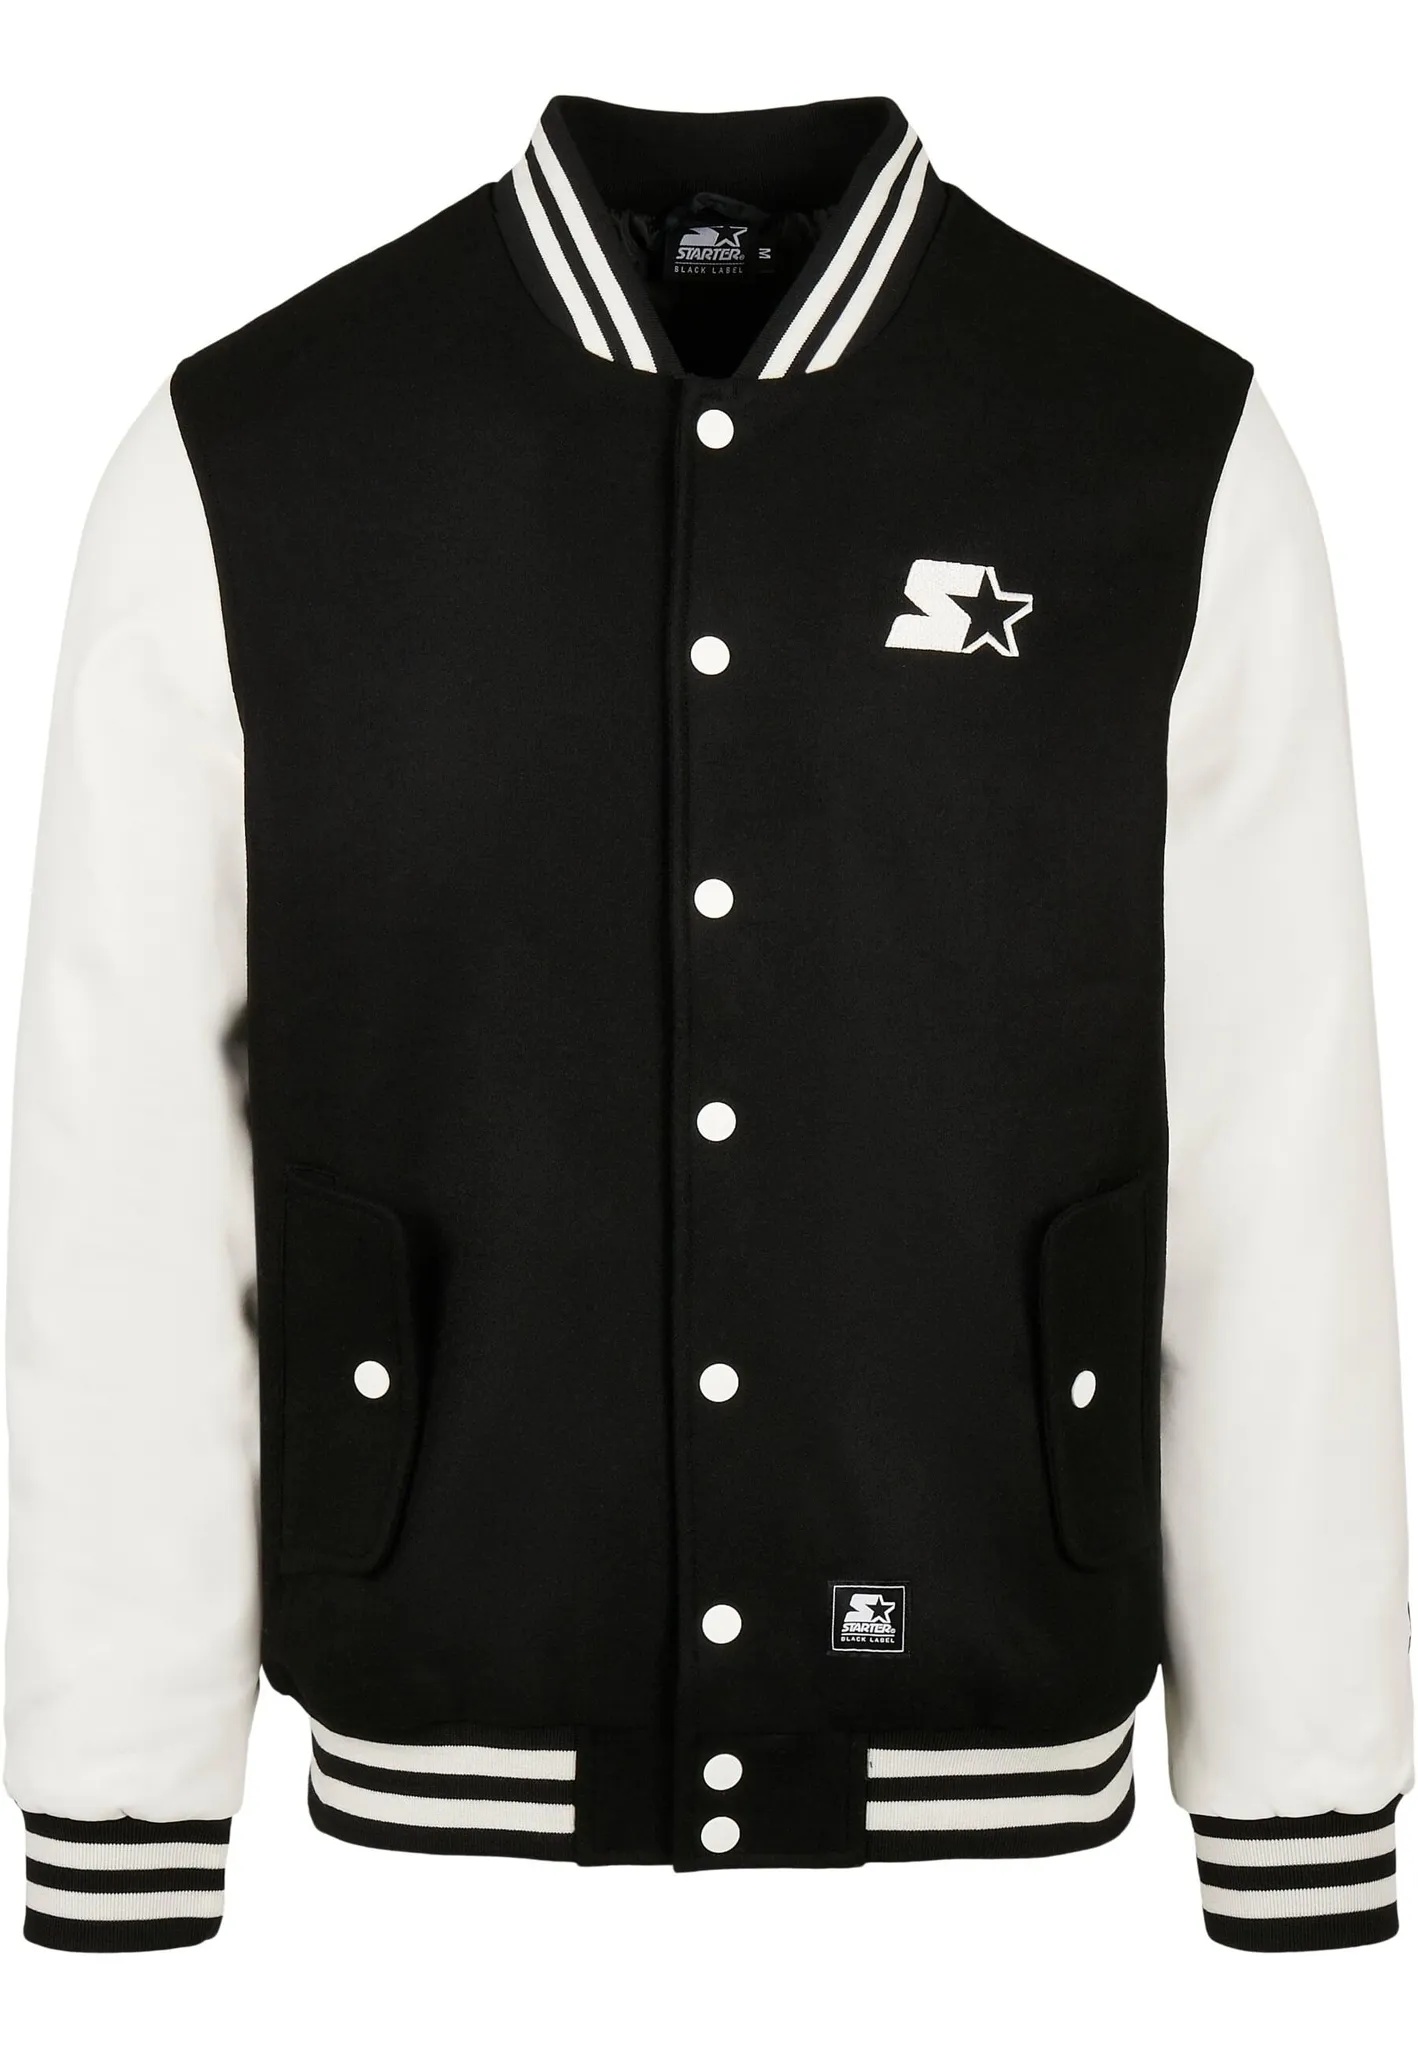 Collegejacke STARTER BLACK LABEL "Herren Starter College Jacket" Gr. M, schwarz-weiß (black, white) Herren Jacken Übergangsjacken